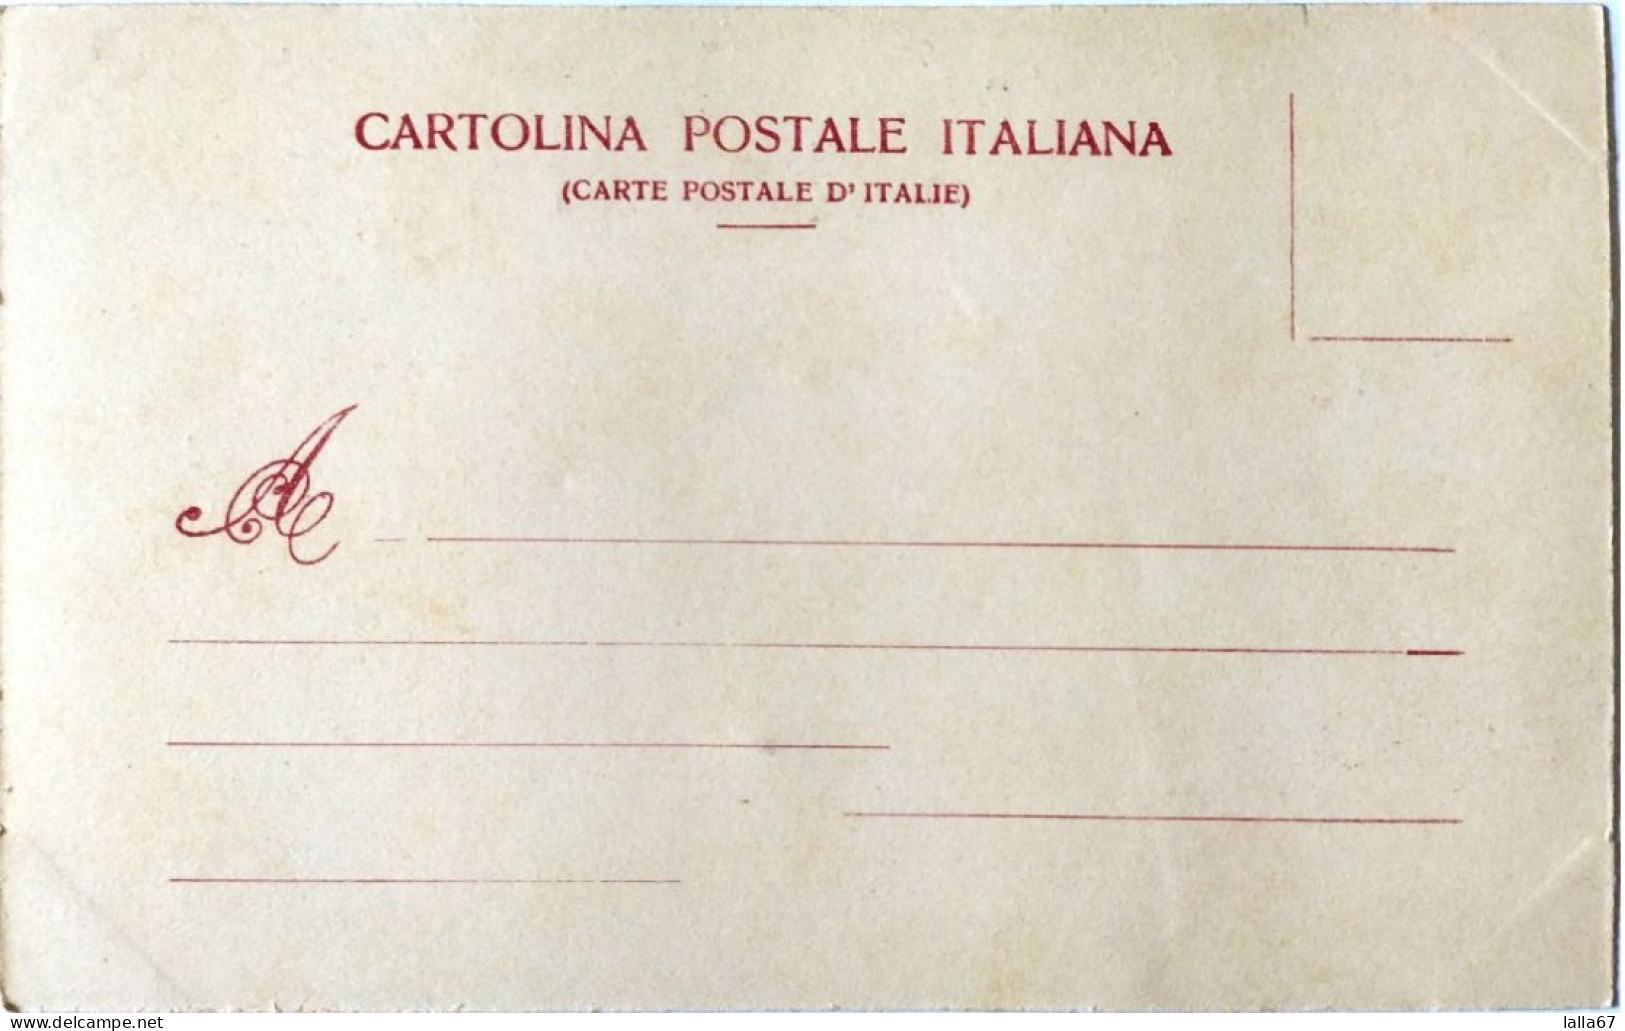 CARTOLINA FORMATO PICCOLO PADOVA RICORDI DELLE GRANDI MANOVRE 1903  N. 8032 - Padova (Padua)